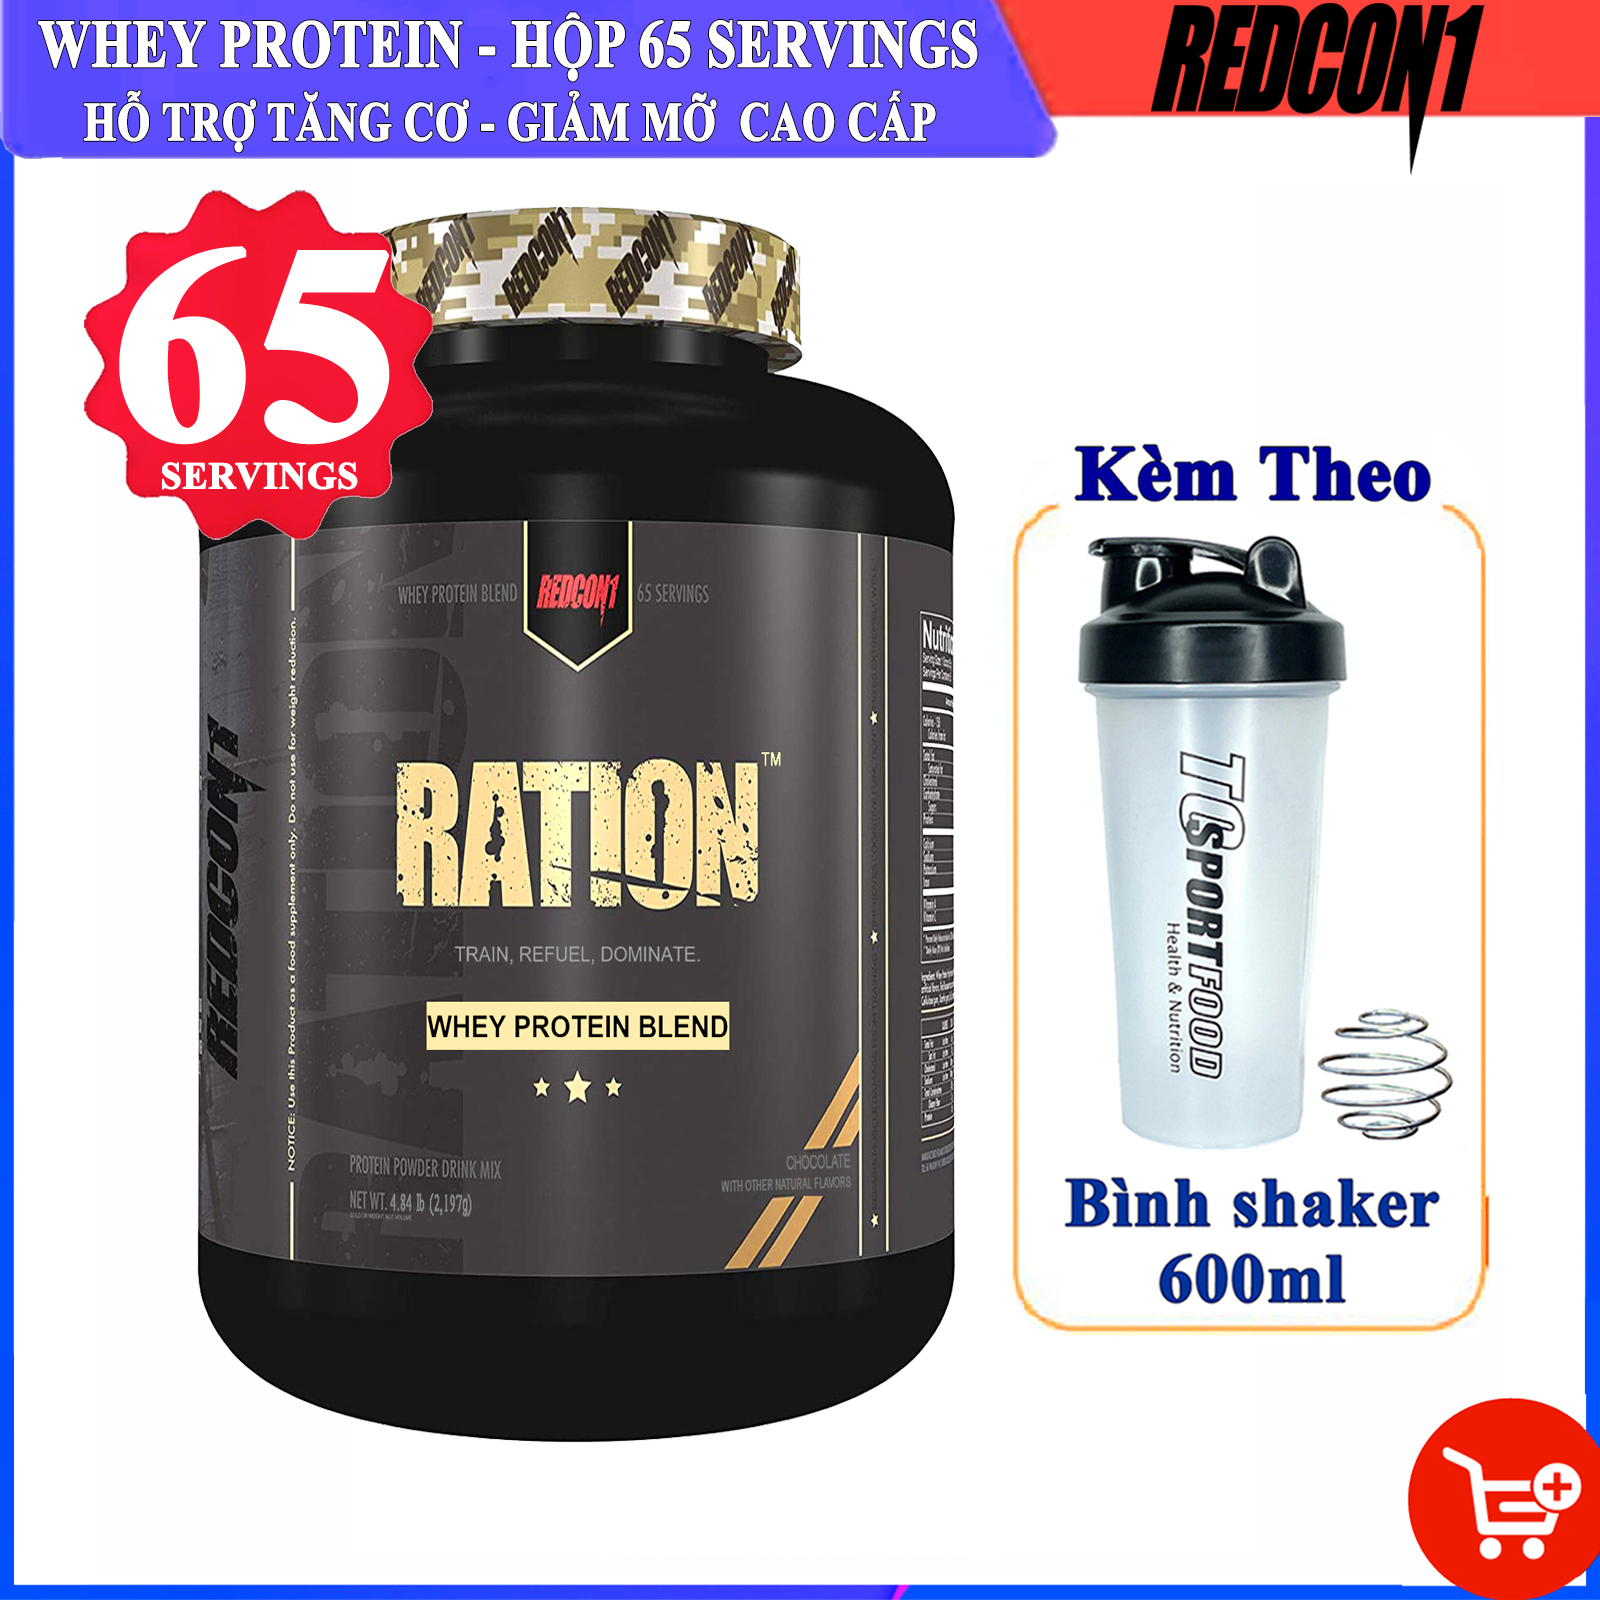 Sữa tăng cơ cao cấp RATION của REDCON1 hộp 65 serving hỗ trợ tăng cơ